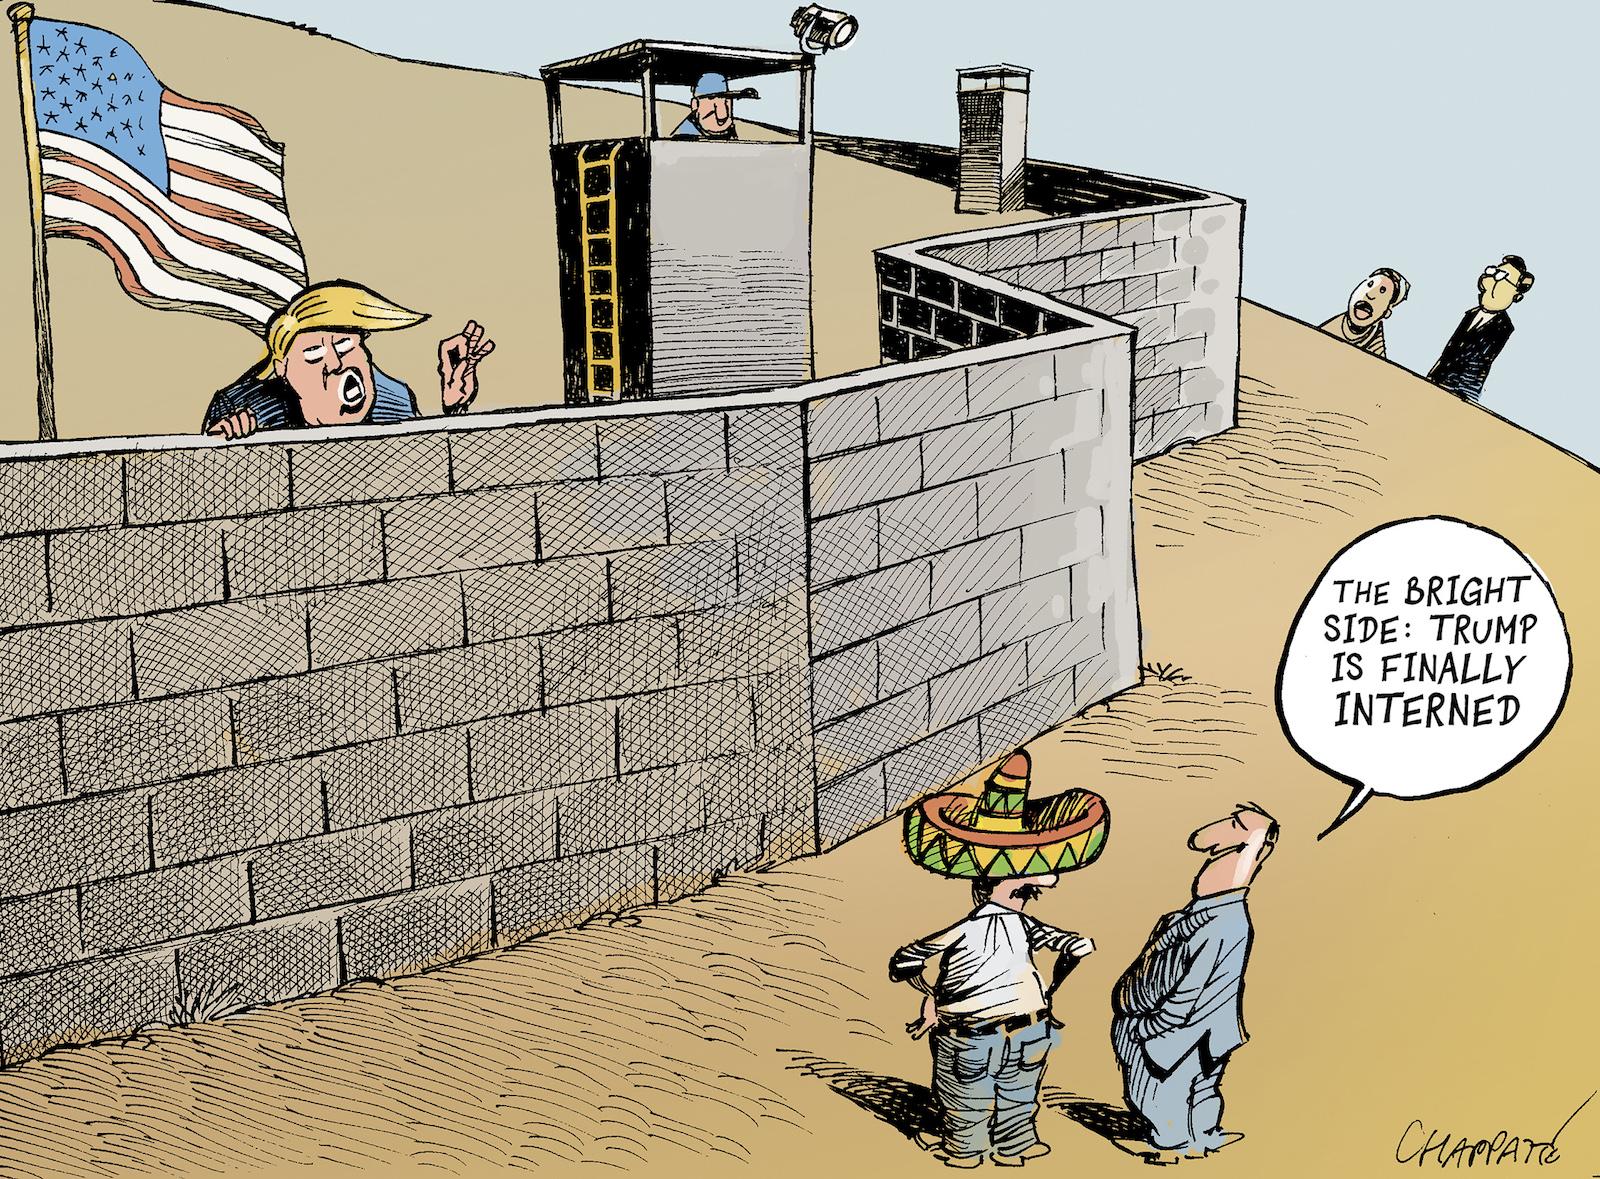 Trump's wall